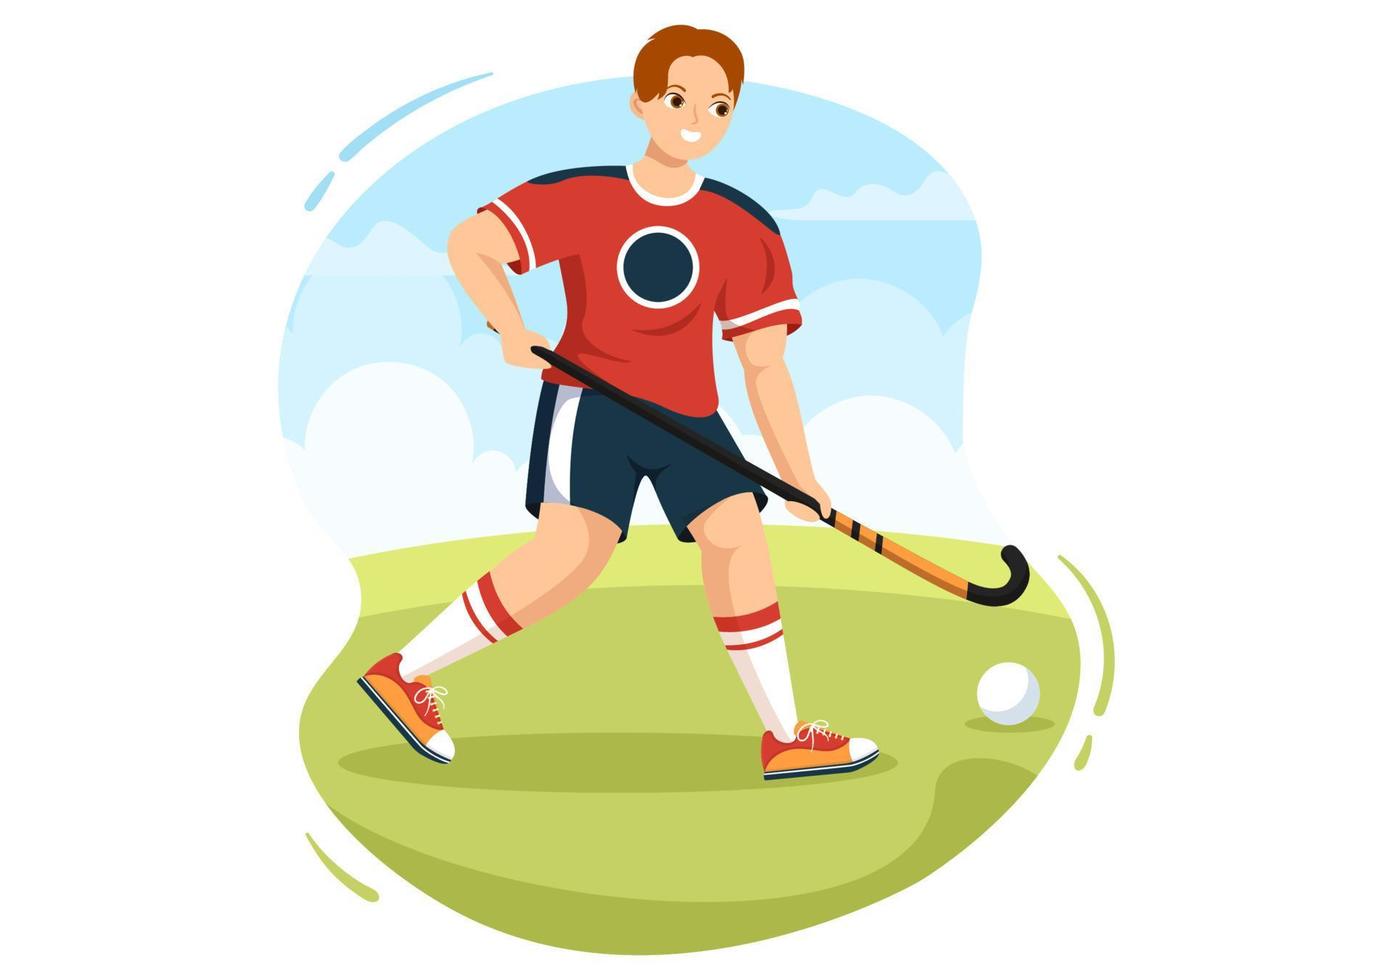 hockeyspielersport mit helm, schläger, puck und schlittschuhen auf der grünen wiese für spiel oder meisterschaft in der flachen hand gezeichneten schablonenillustration der karikatur vektor